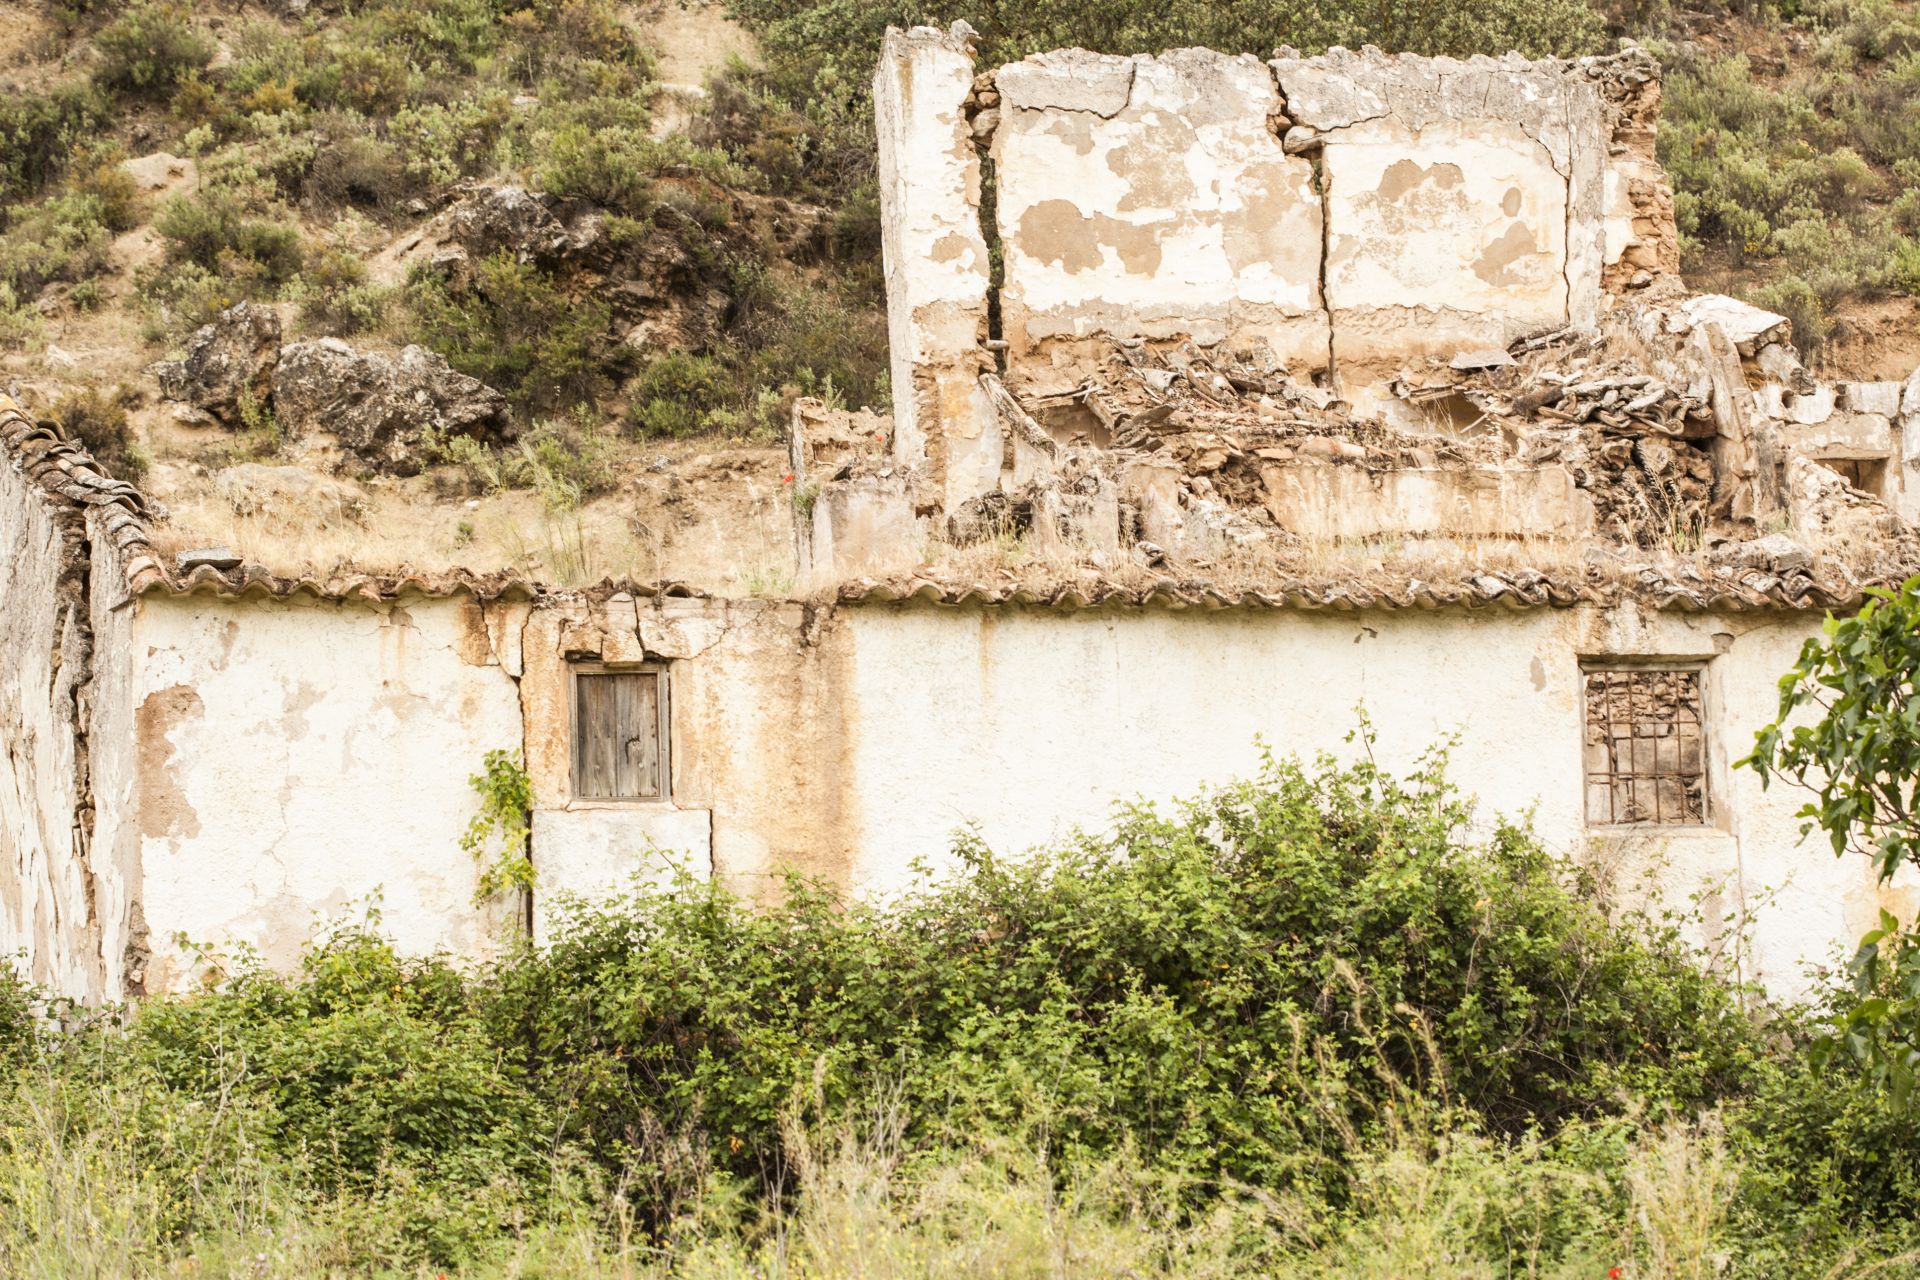 Има близо 1500 изоставени села в Испания, повечето от тях - в северните провинции като Галисия и Астурия